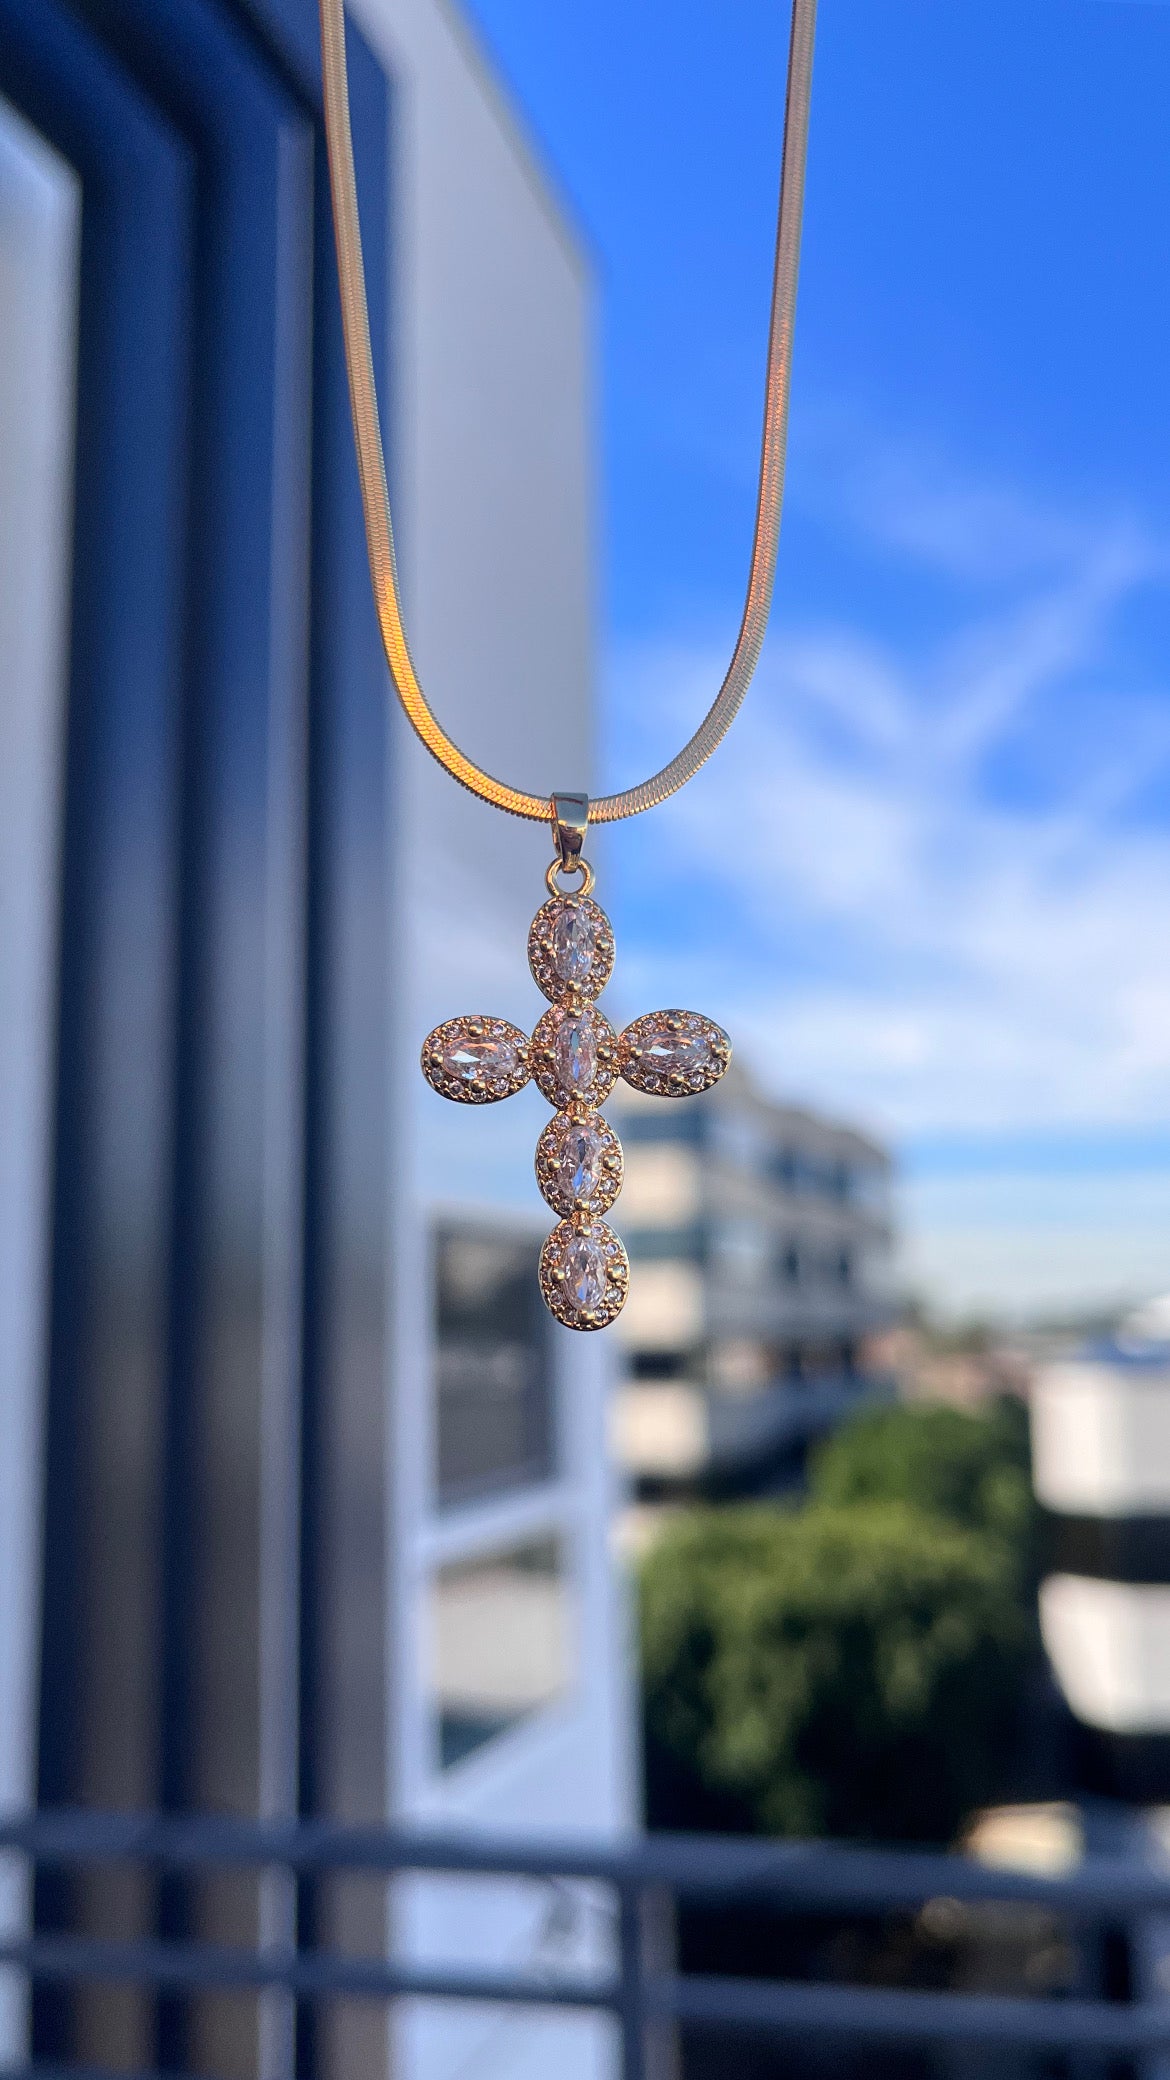 Herringbone Cross Necklace